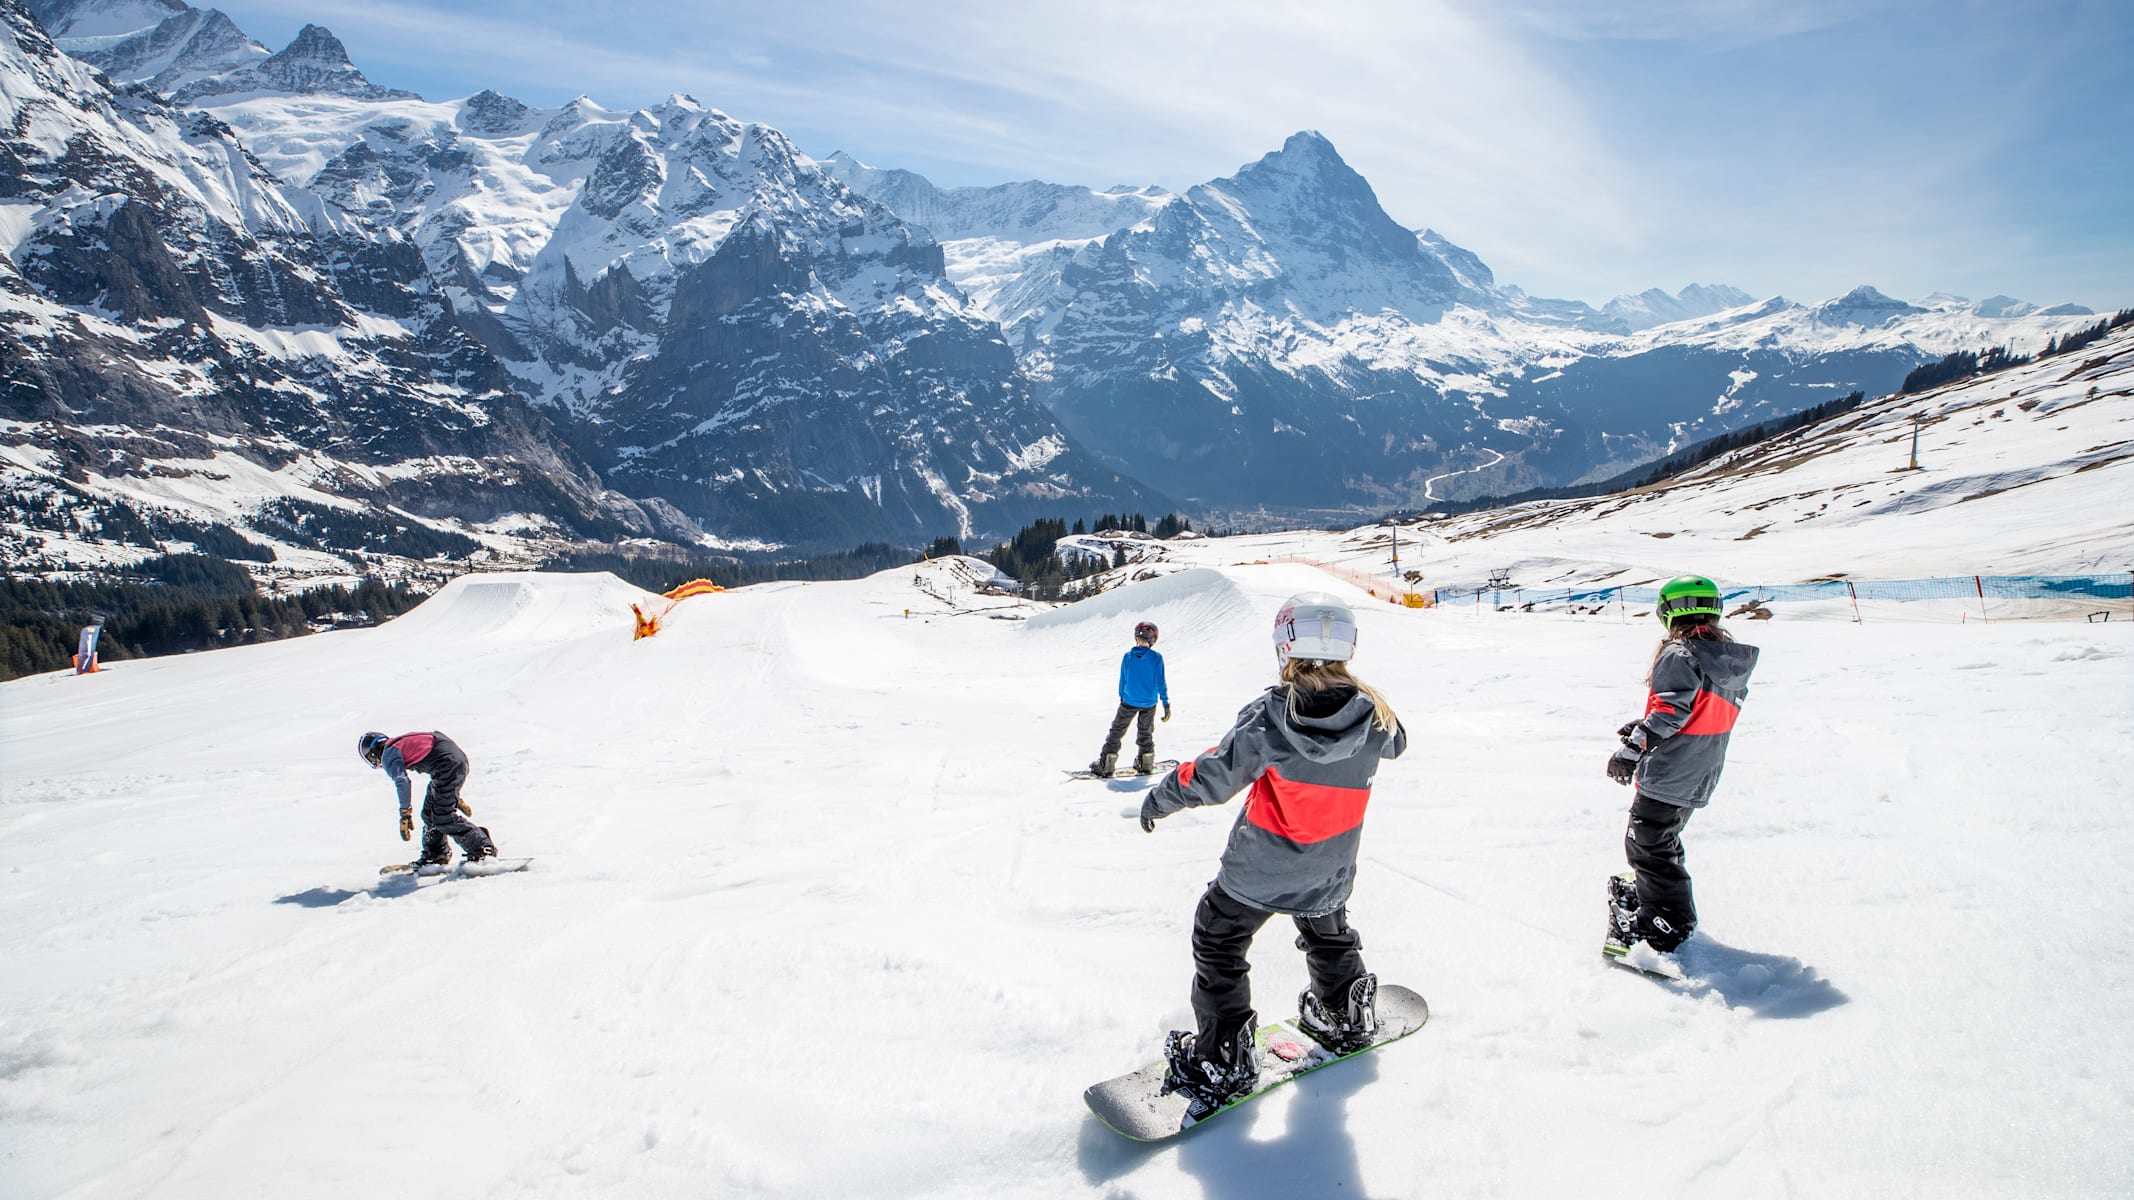 Grindelwald, Jungfrau Railways, winter, Eiger, First, Grindelwald-First, winter sports, kids, children, snowboarding, WhiteElements